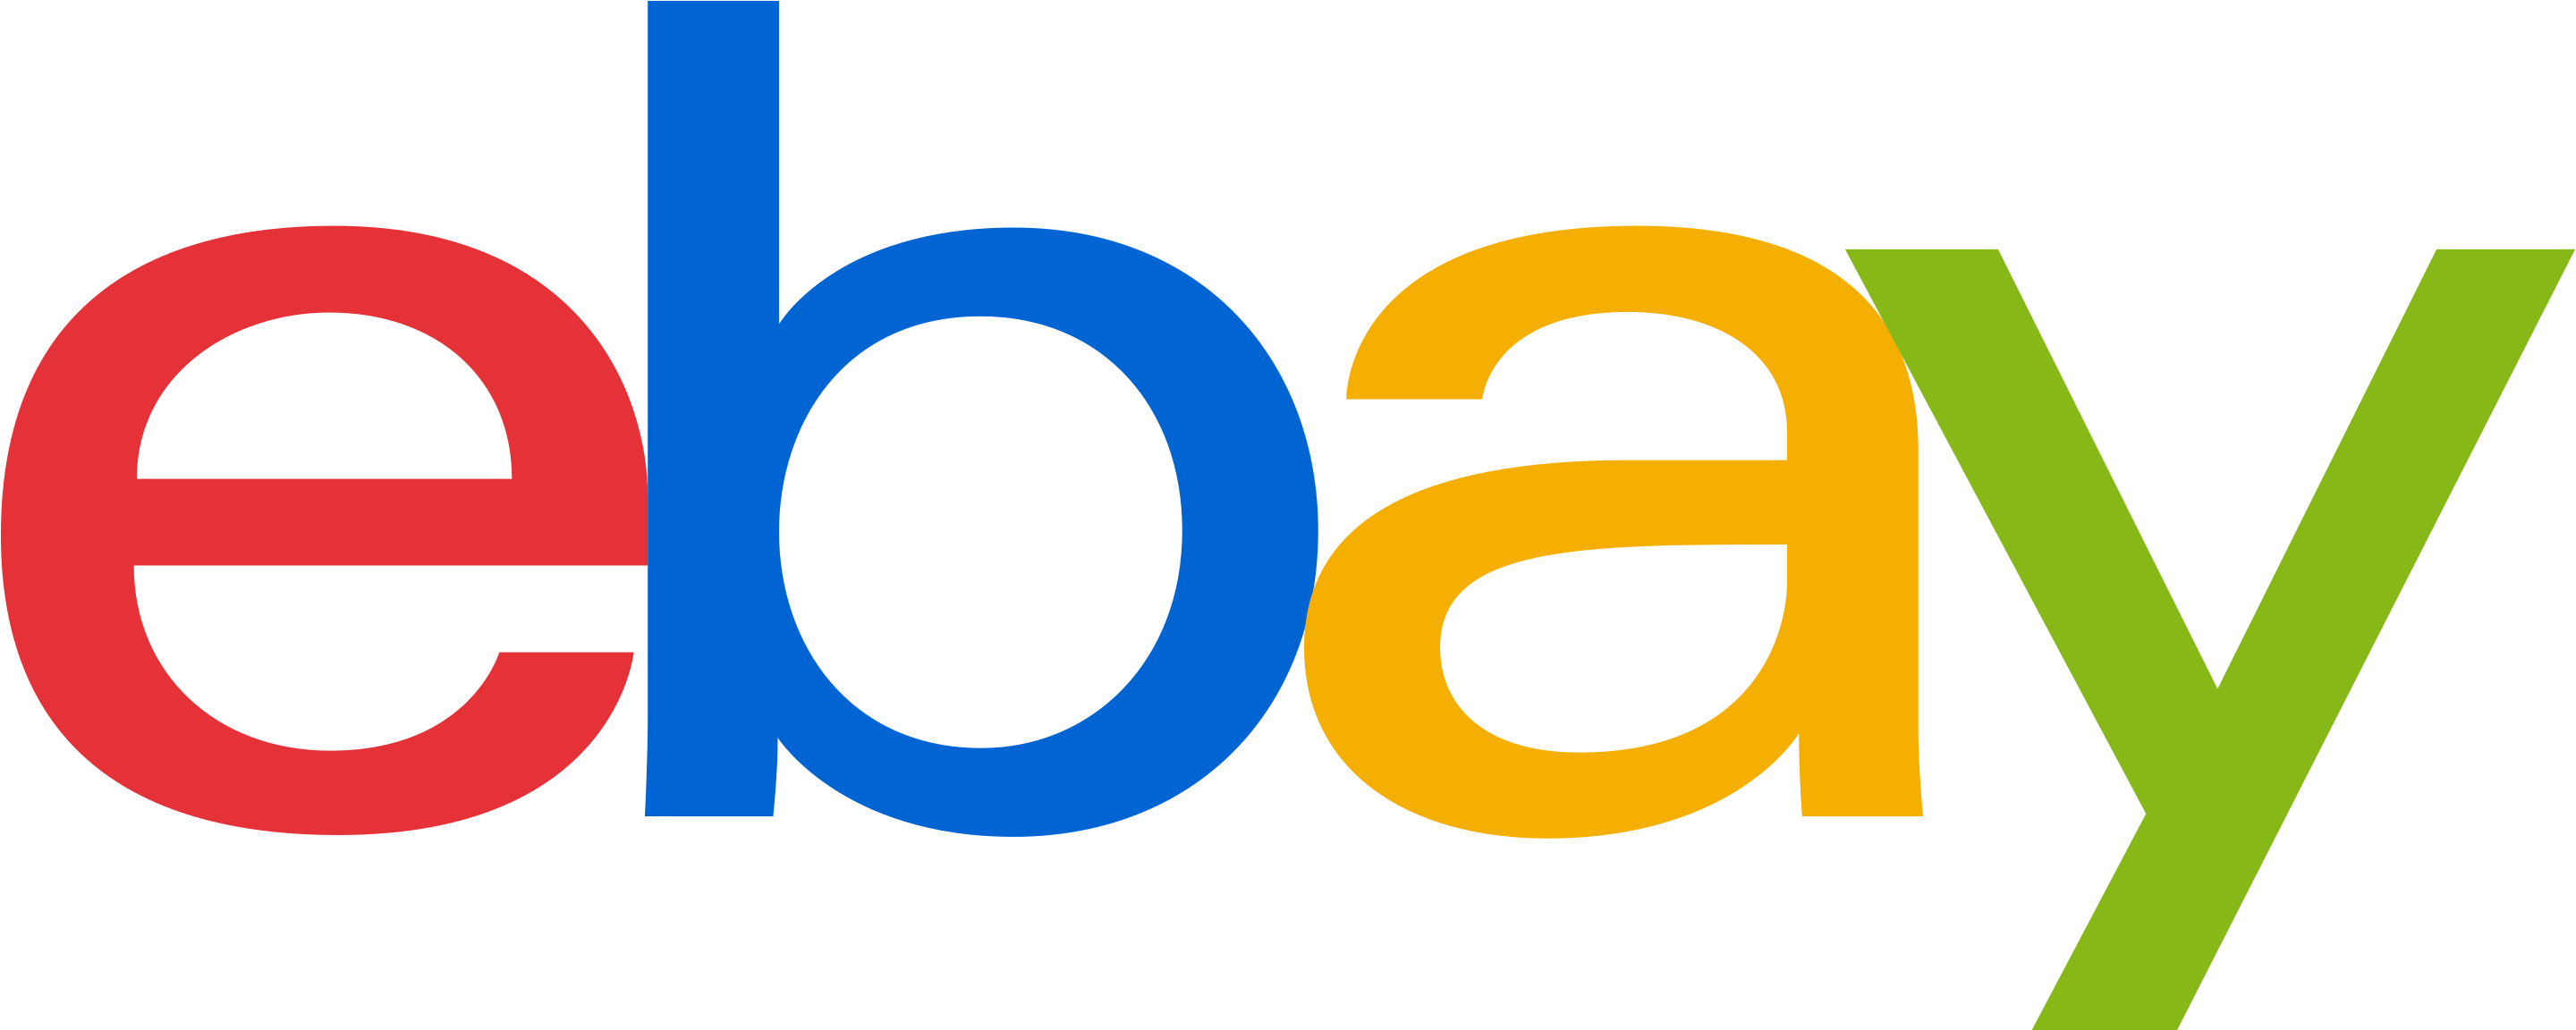 eBay's logo since October 2012.